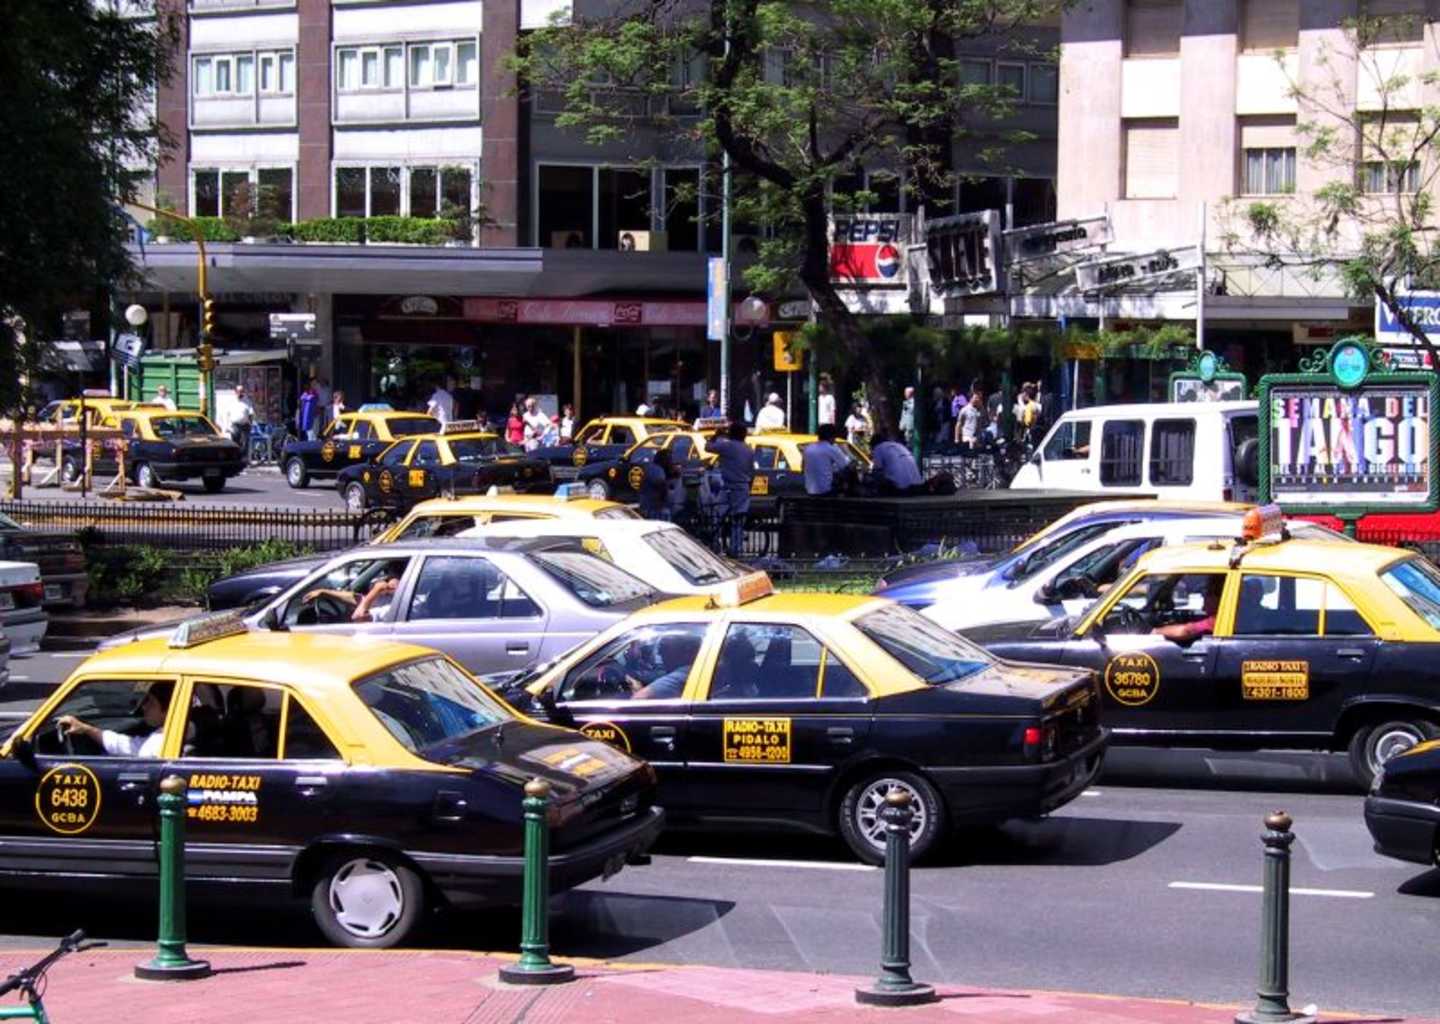 La dernière génération de 504 (1er plan) et la première (3ème plan) encadrent la 405 dans la nuée des taxis argentins !